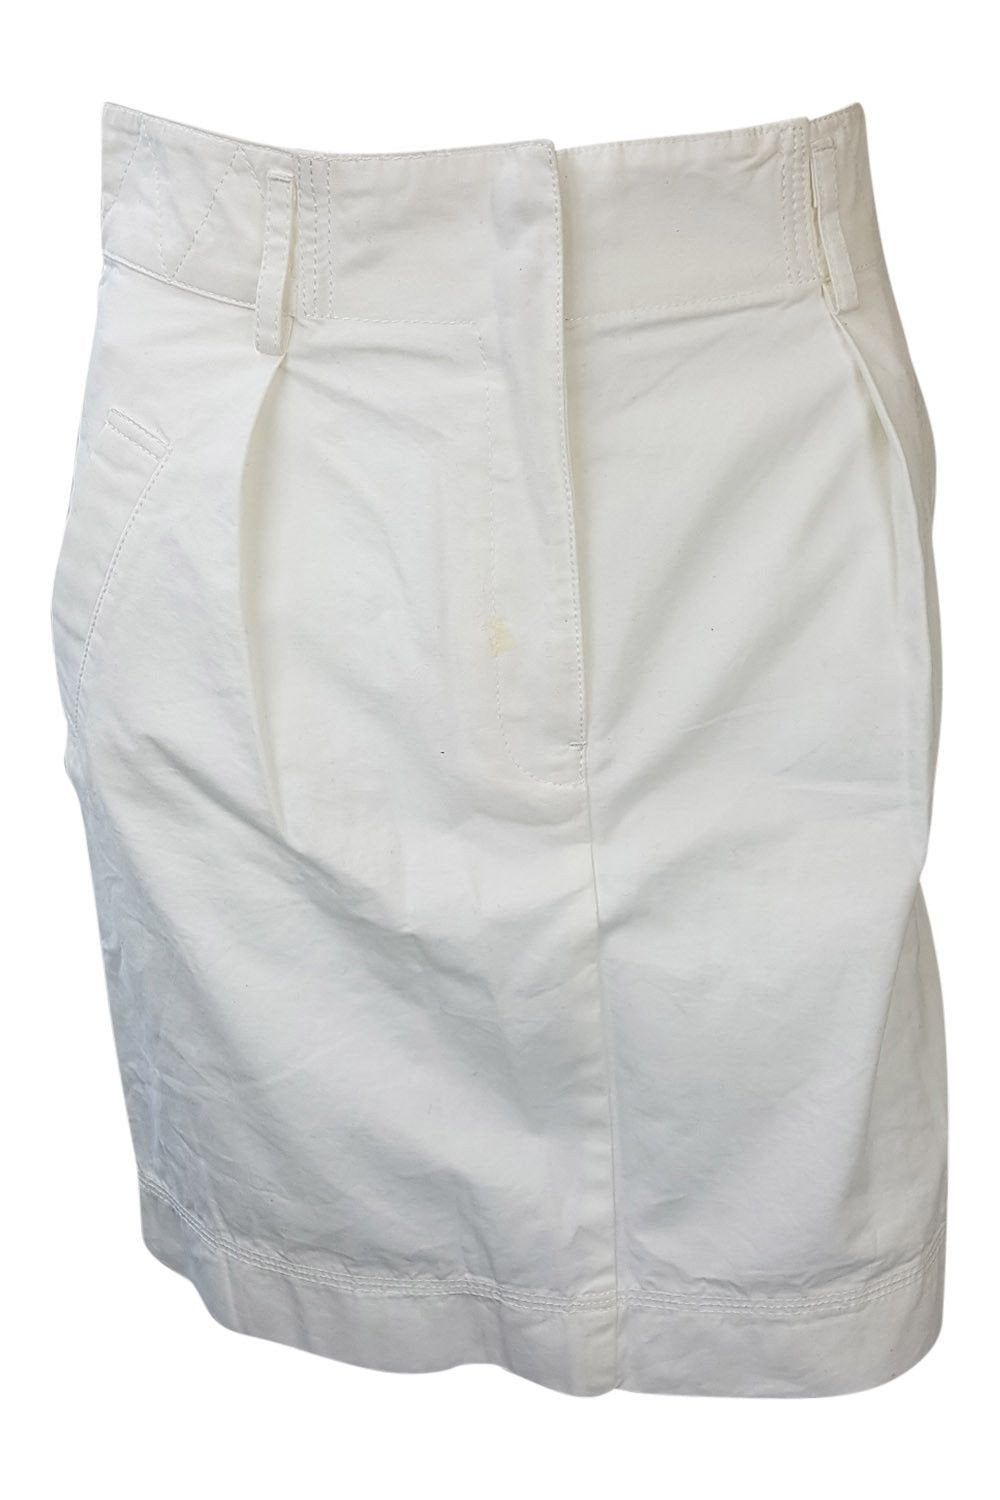 PAUL & JOE Sister White Cotton Mini Skirt (UK 4)-Paul & Joe Paris-The Freperie